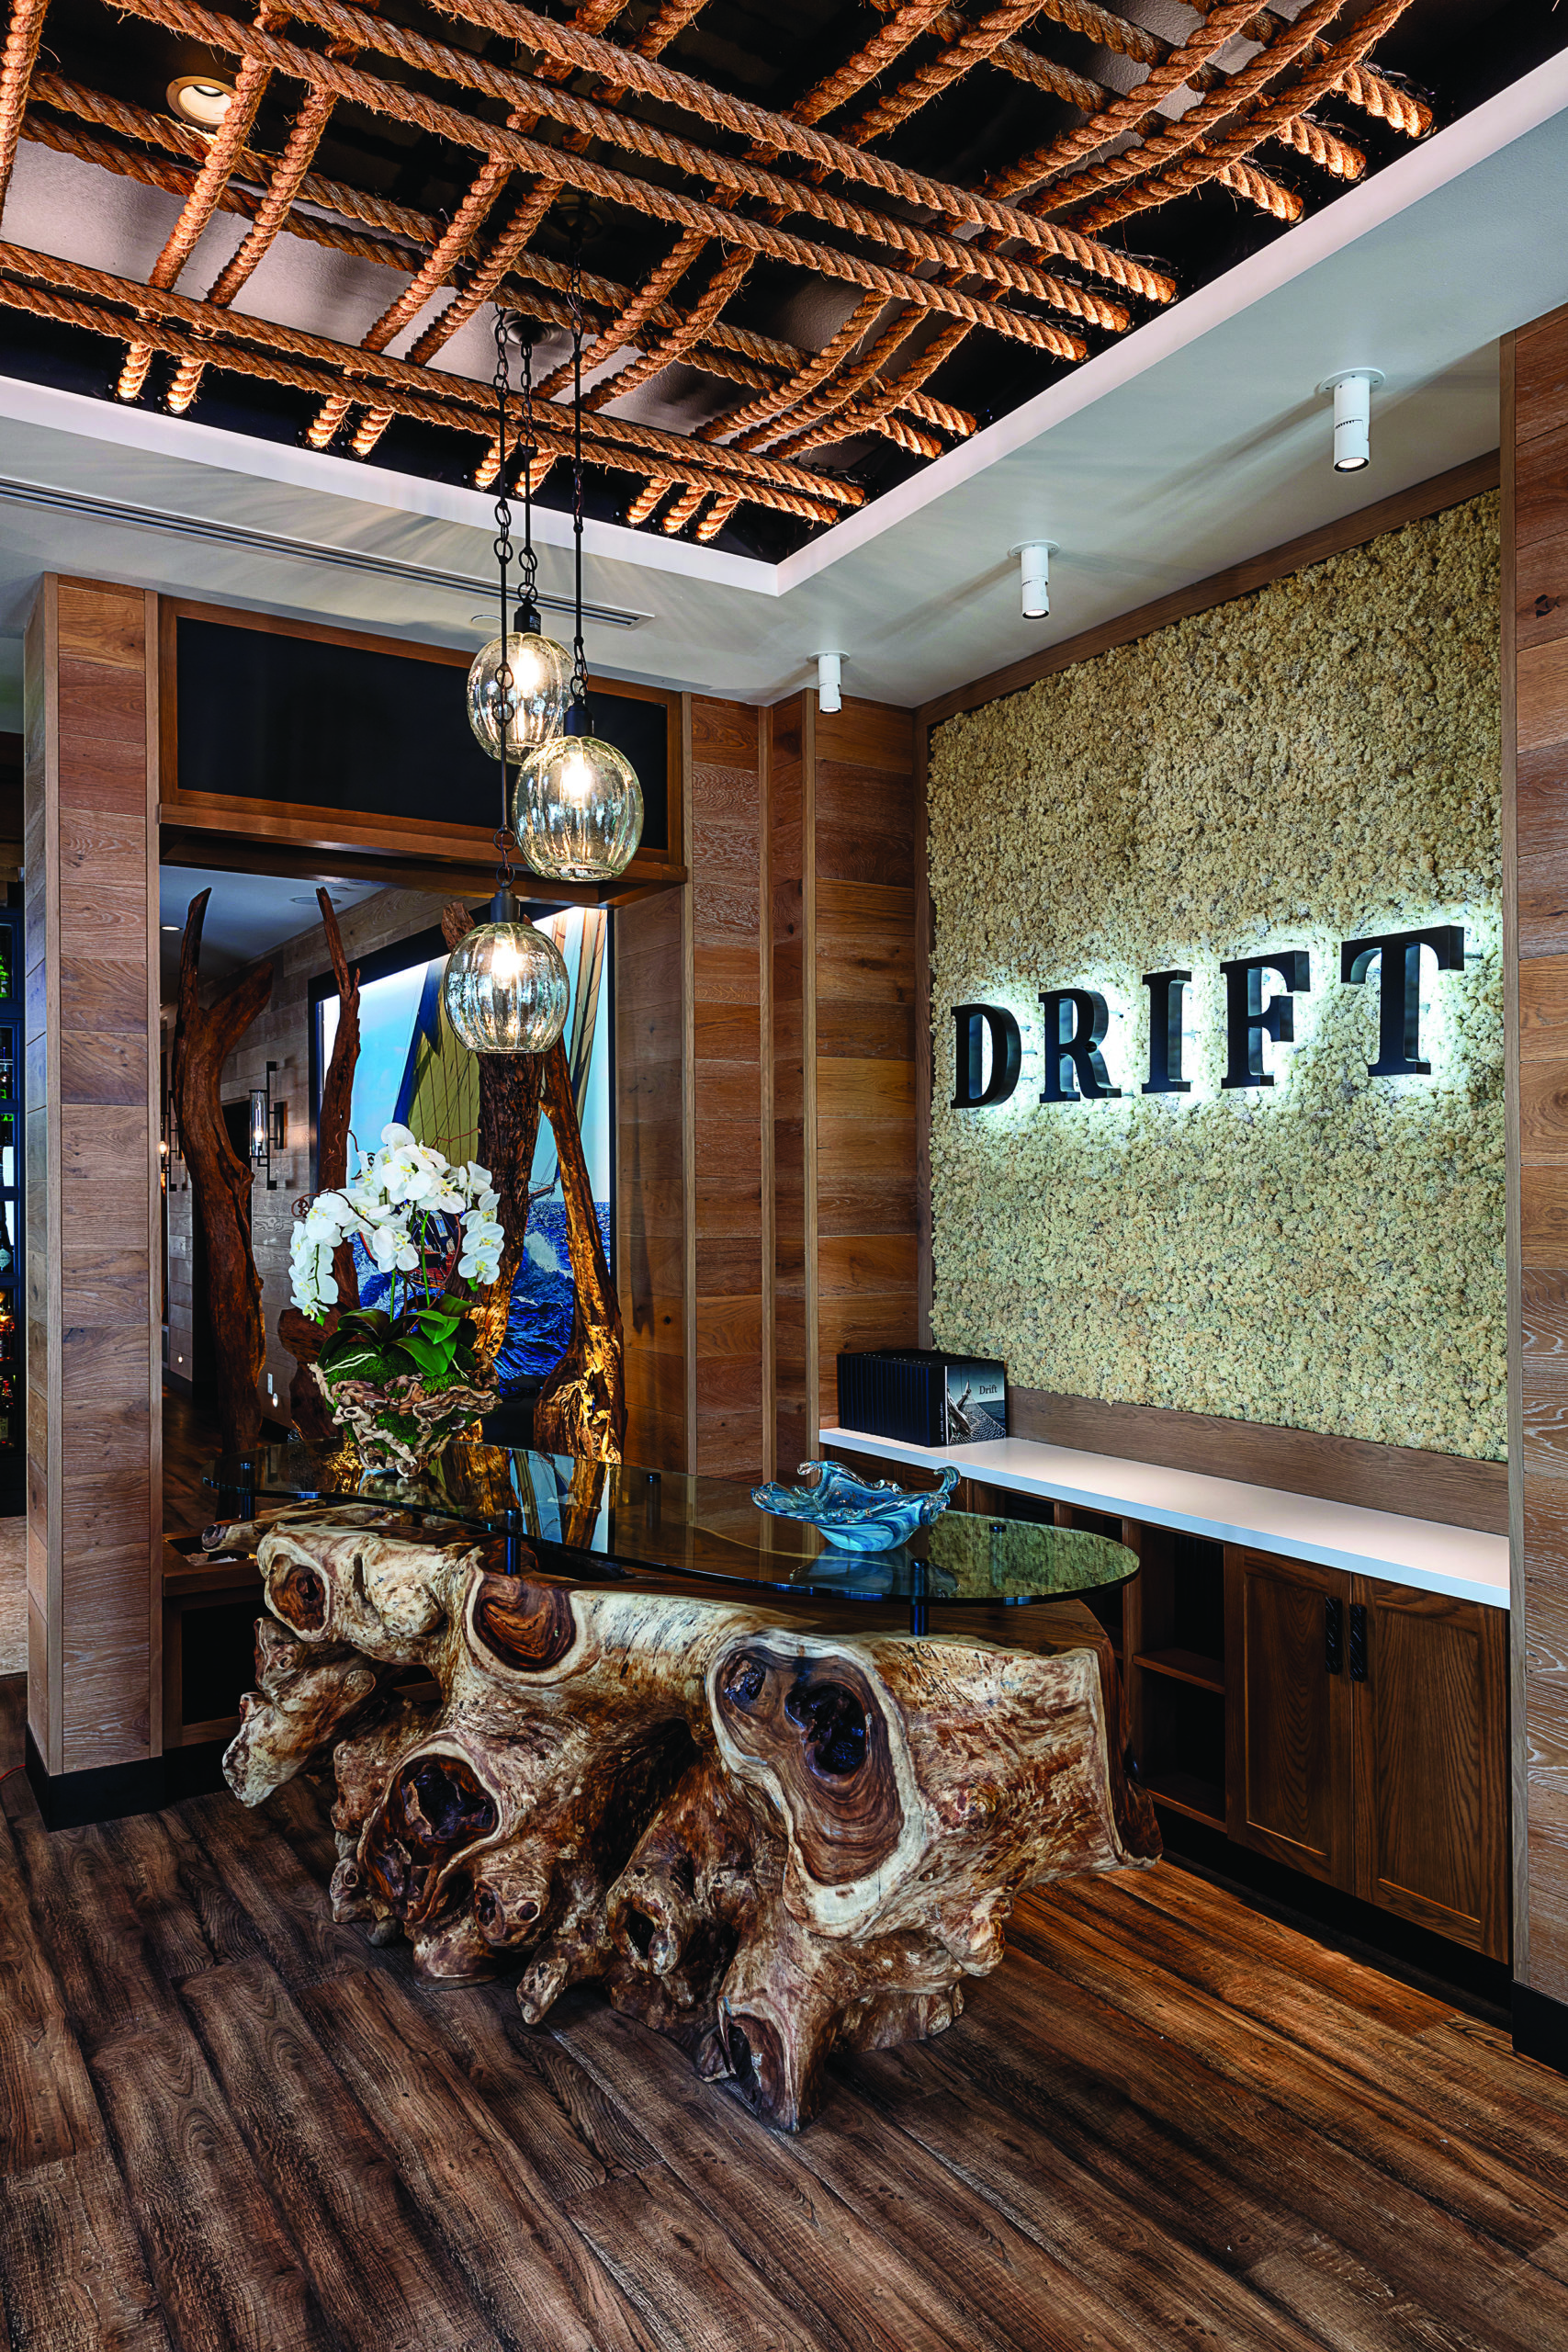 Drift, Opal Grand’s newest restaurant